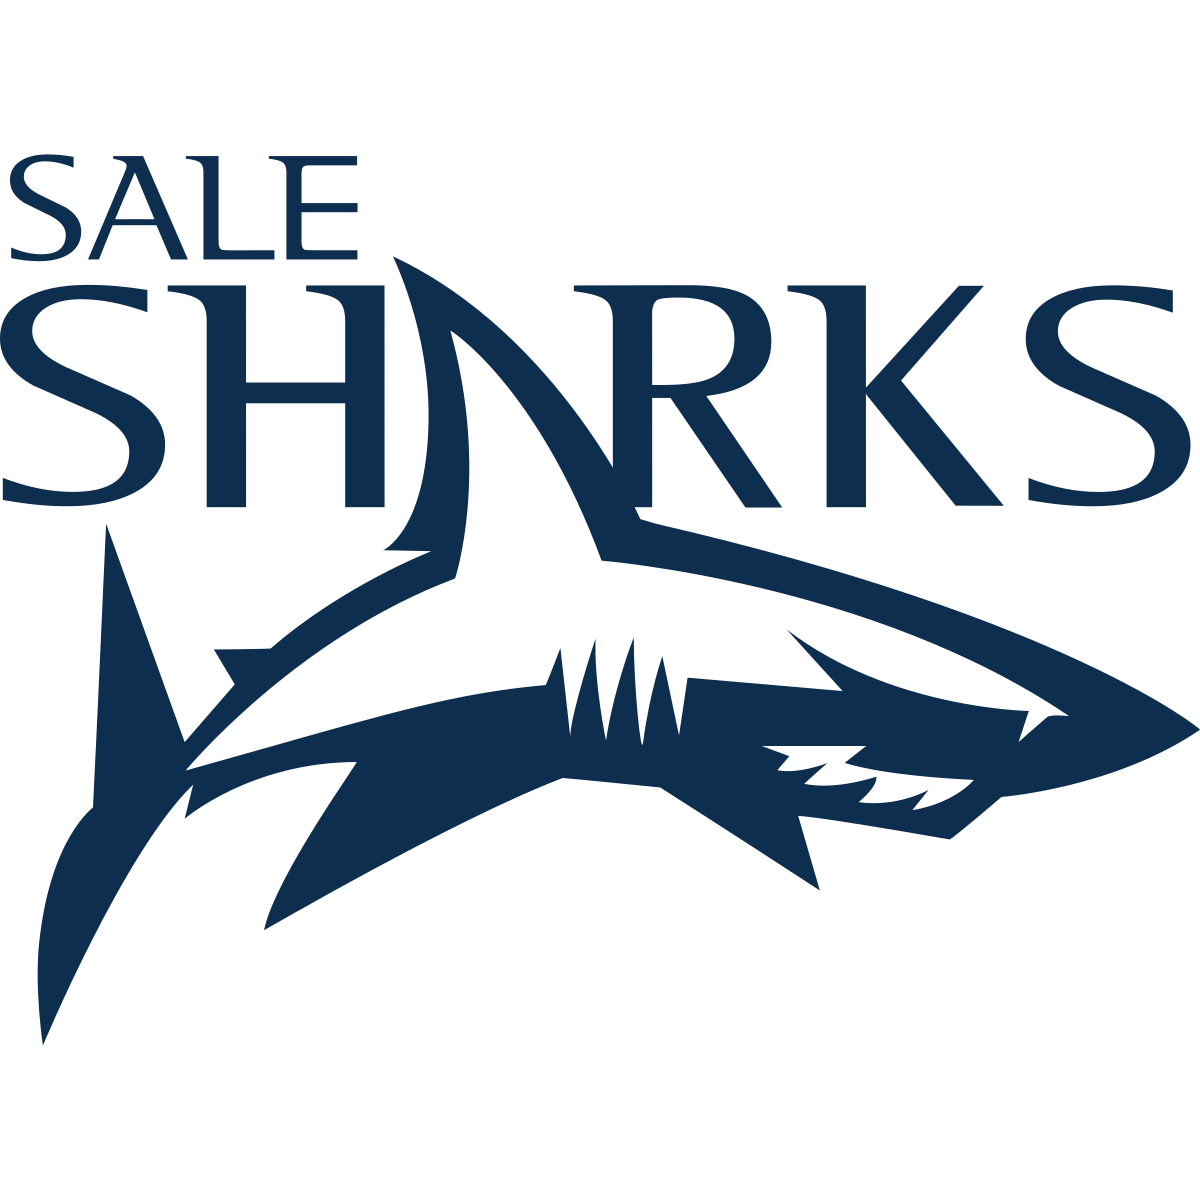 Sale sharks 3